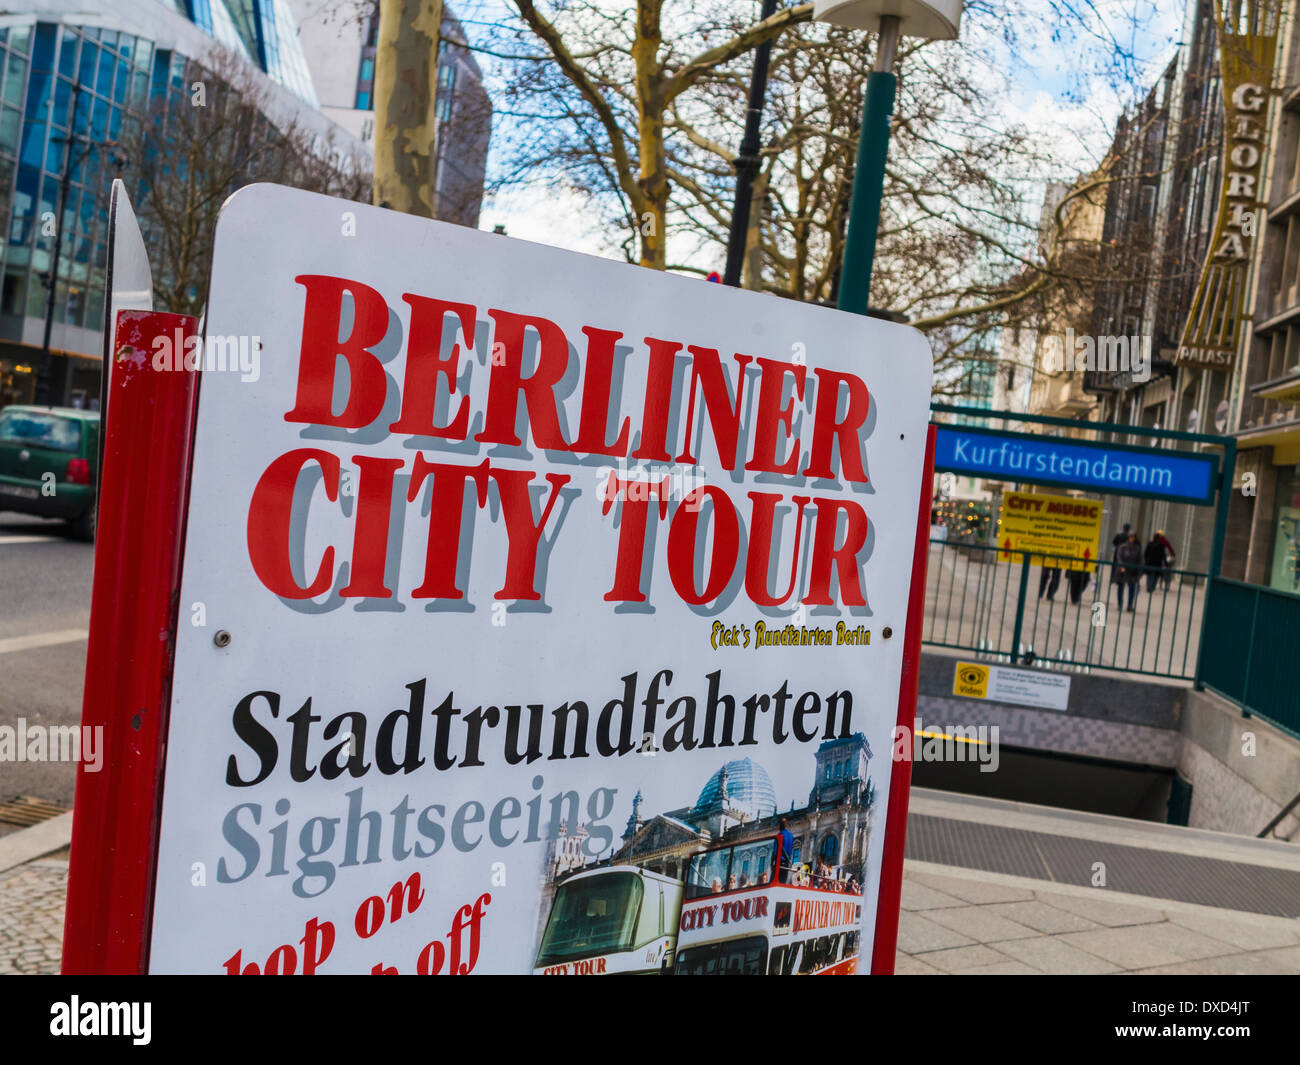 Germania - Berlin City Tour segno e ingresso al Kufurstenddamm la stazione della metropolitana di Berlino, Germania, Europa Foto Stock